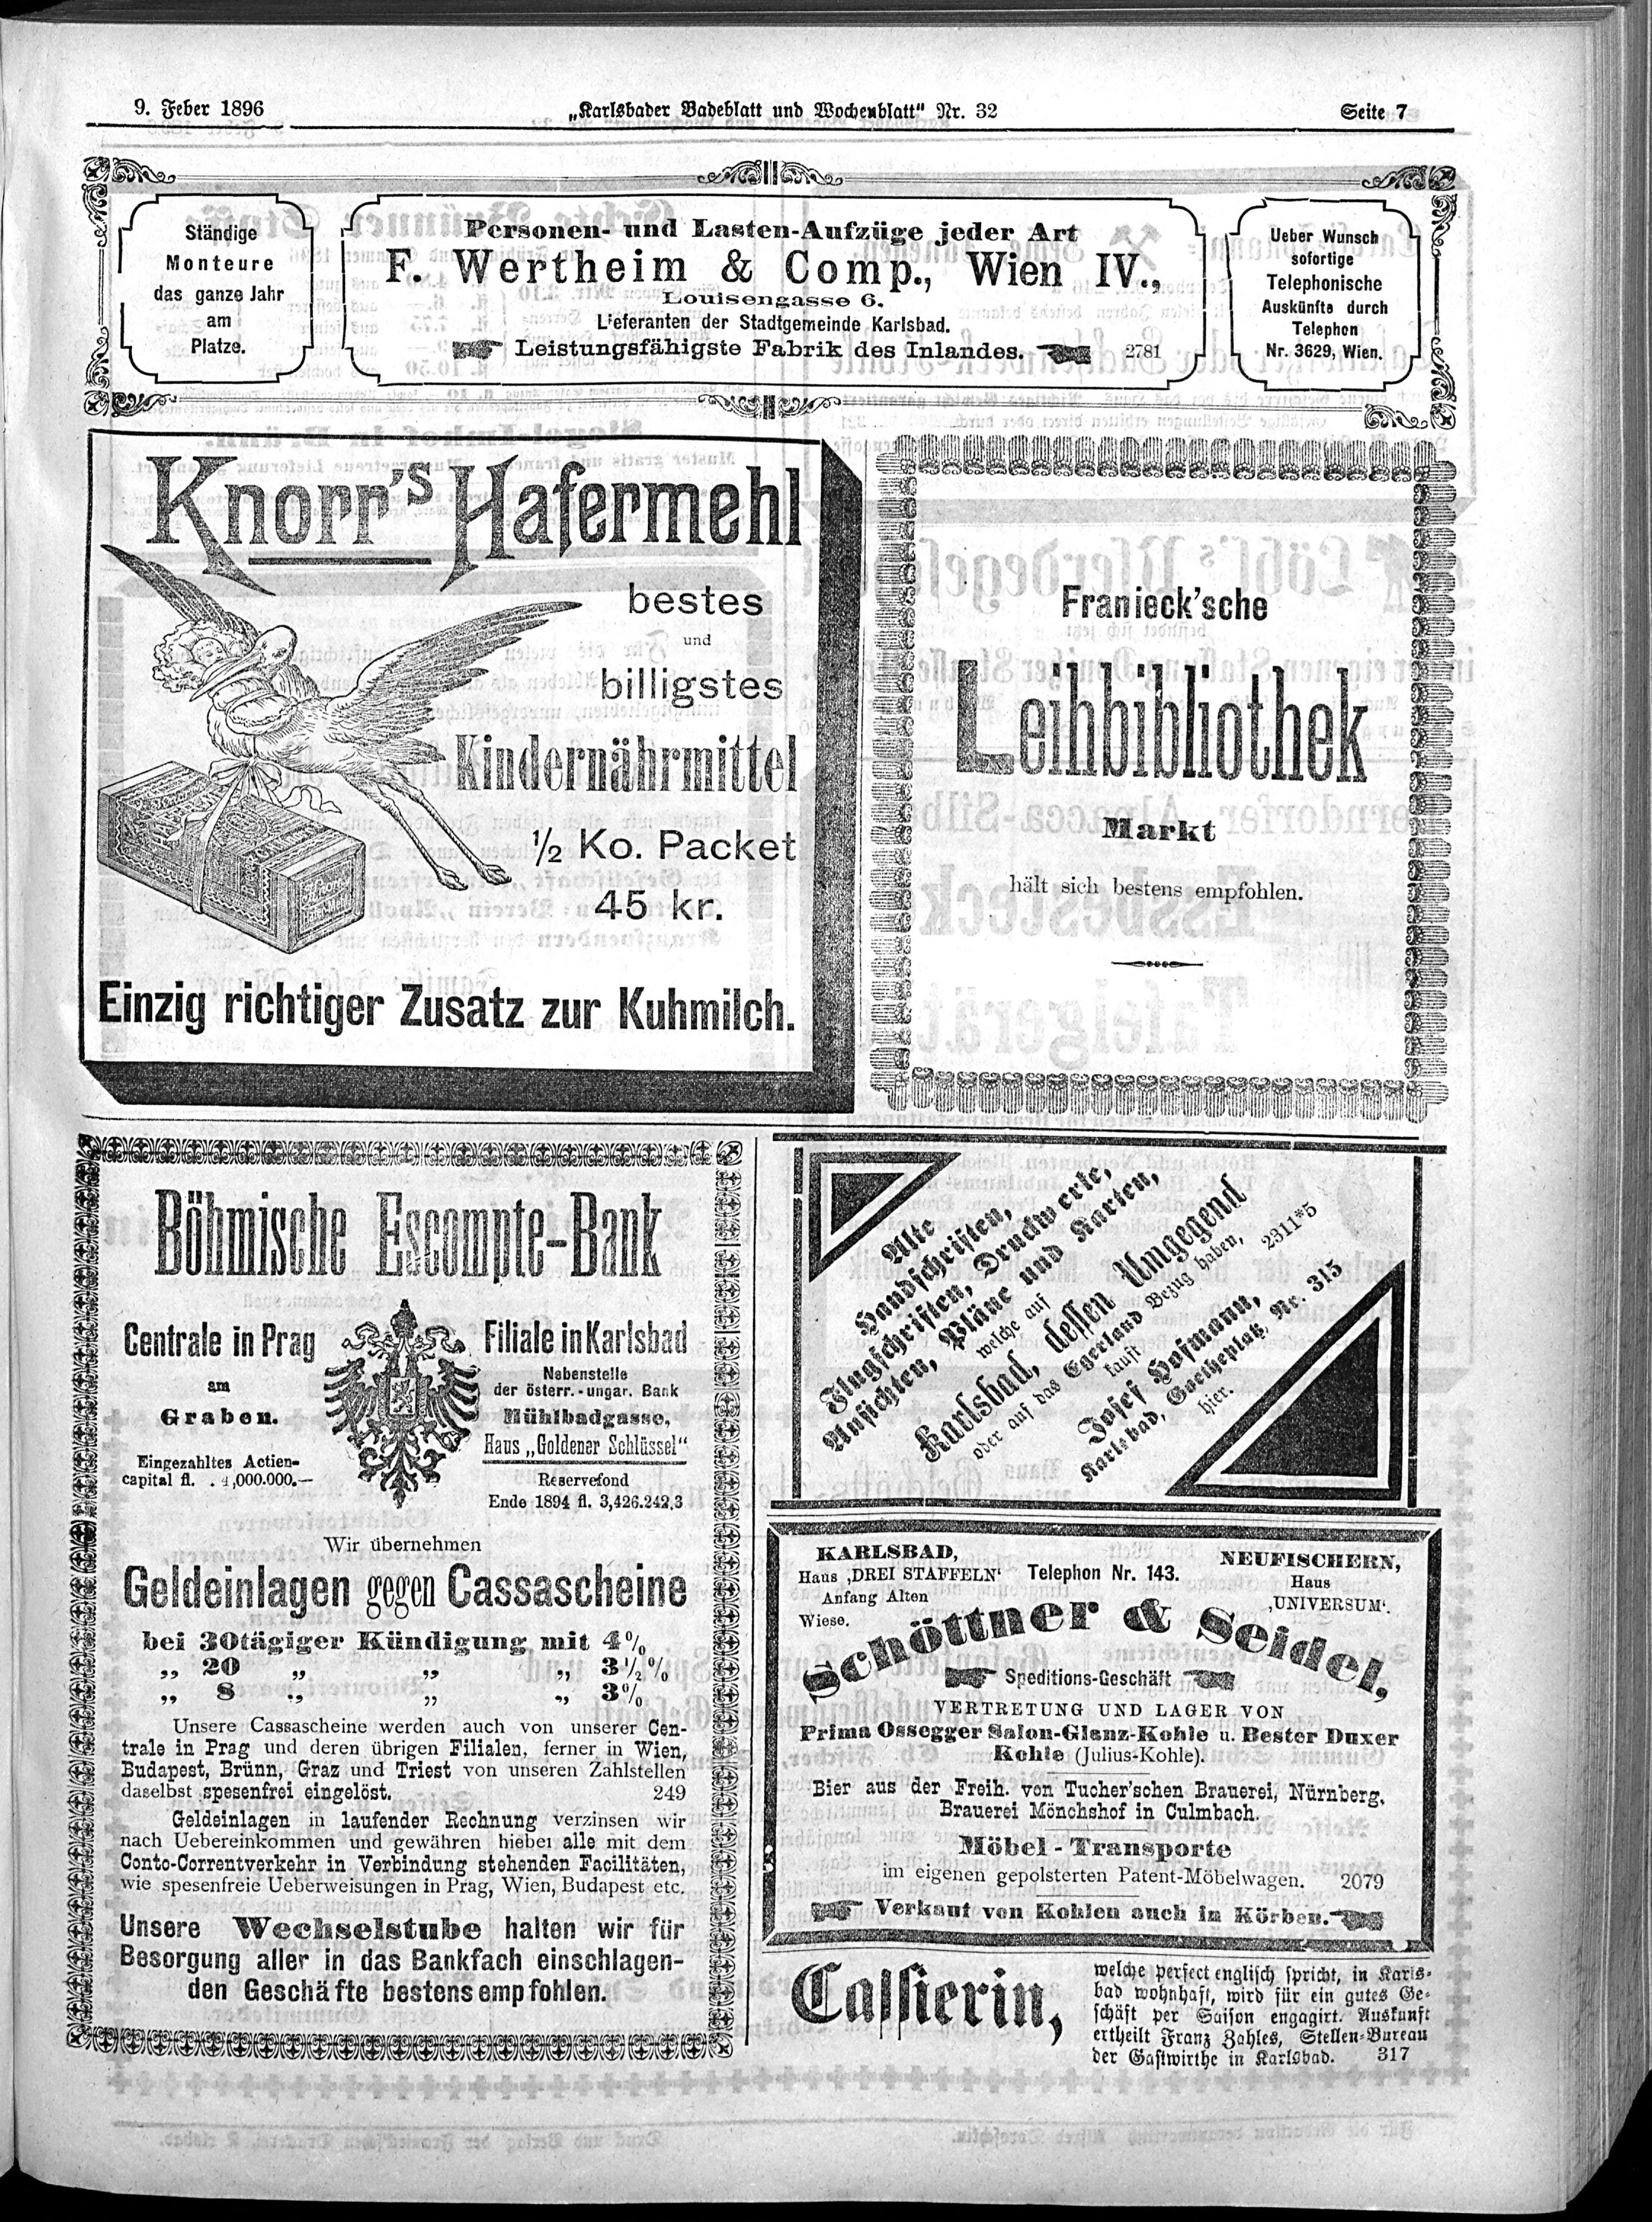 7. karlsbader-badeblatt-1896-02-09-n32_1395